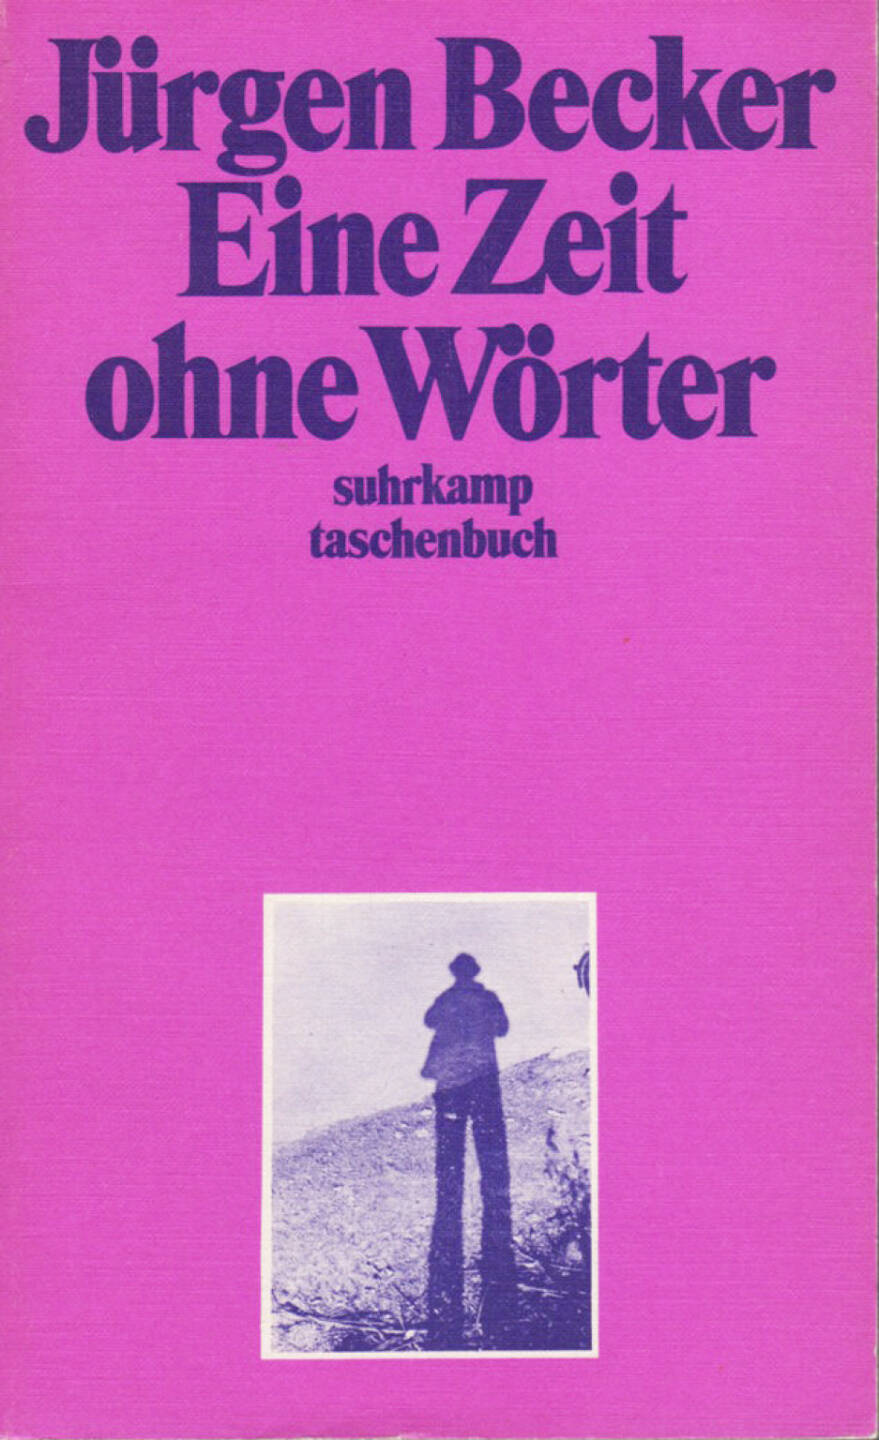 Jürgen Becker - Eine Zeit ohne Wörter, Suhrkamp, 1971, Cover - http://josefchladek.com/book/juergen_becker_-_eine_zeit_ohne_woerter